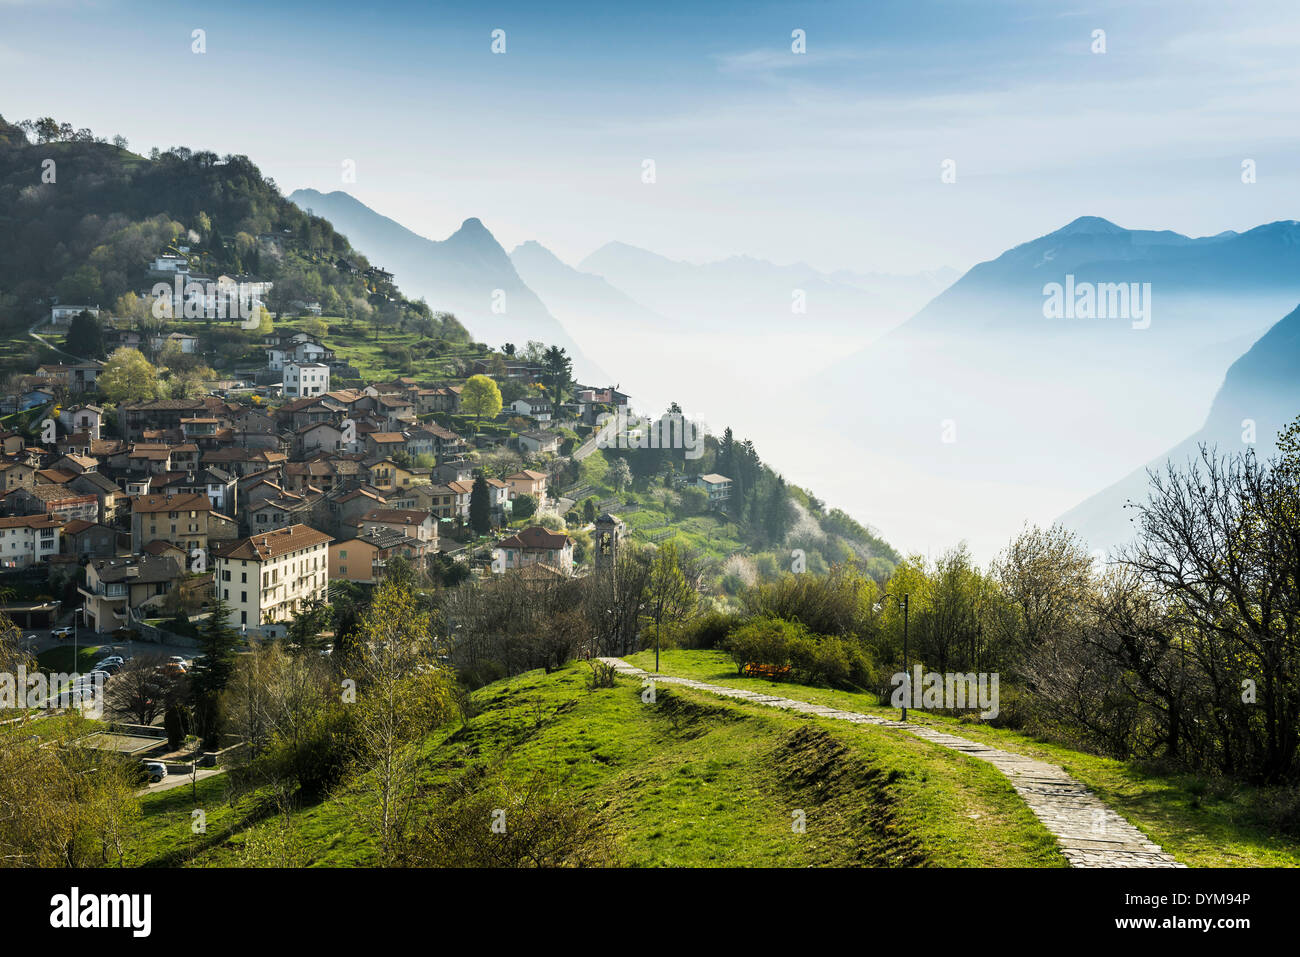 Village of Brè, Monte Brè, Lugano, Lake Lugano, Lago di Lugano, Canton Ticino, Switzerland Stock Photo